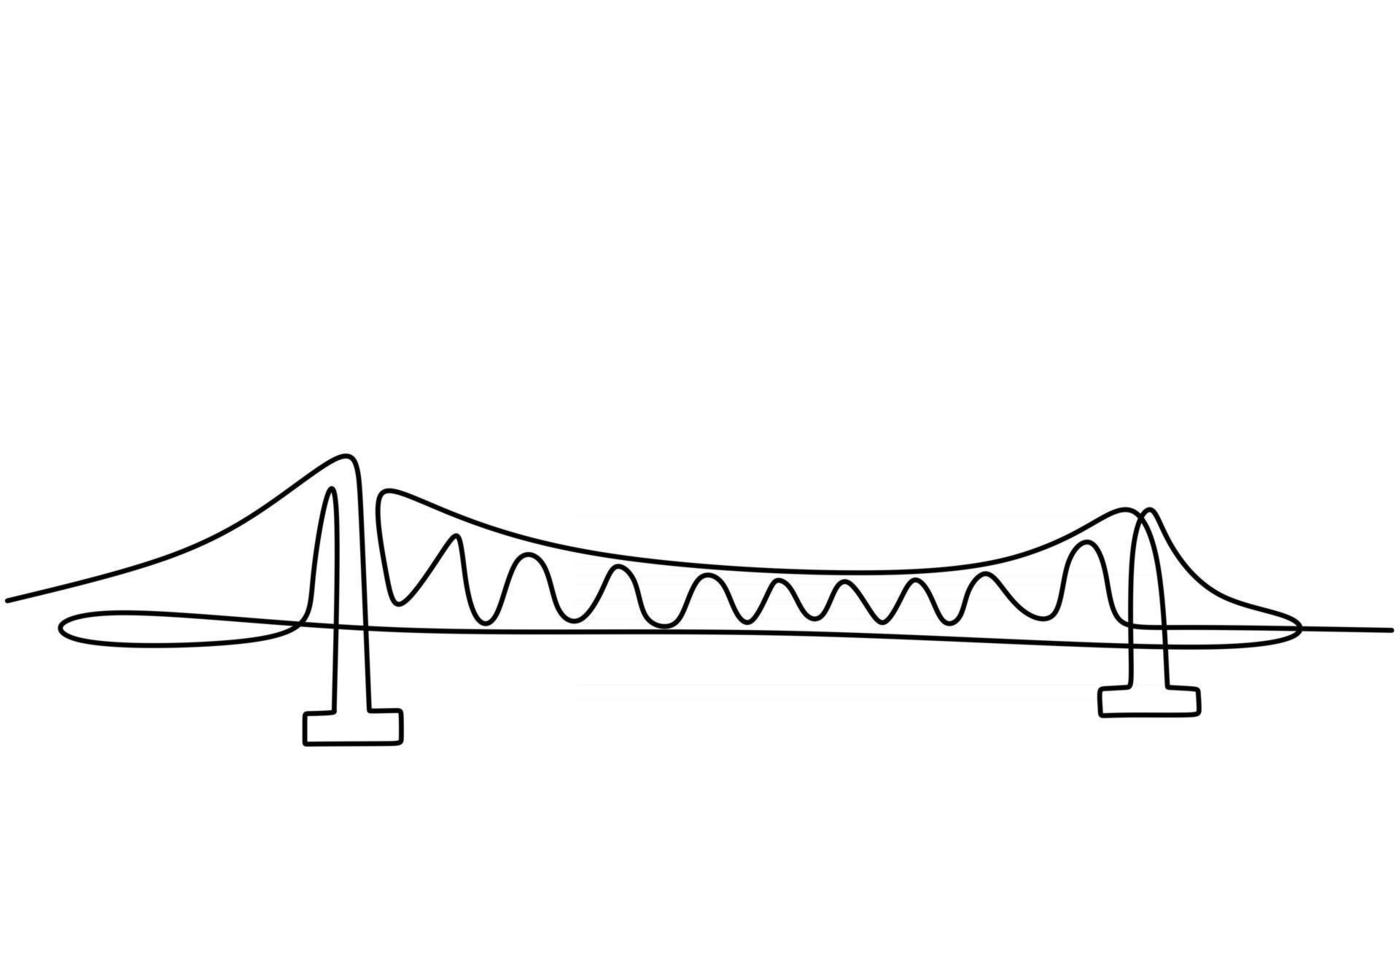 ponte gigante sobre o rio. contínua uma linha de projeto de desenho de ponte. estilo minimalista moderno simples, isolado no fundo branco. vetor